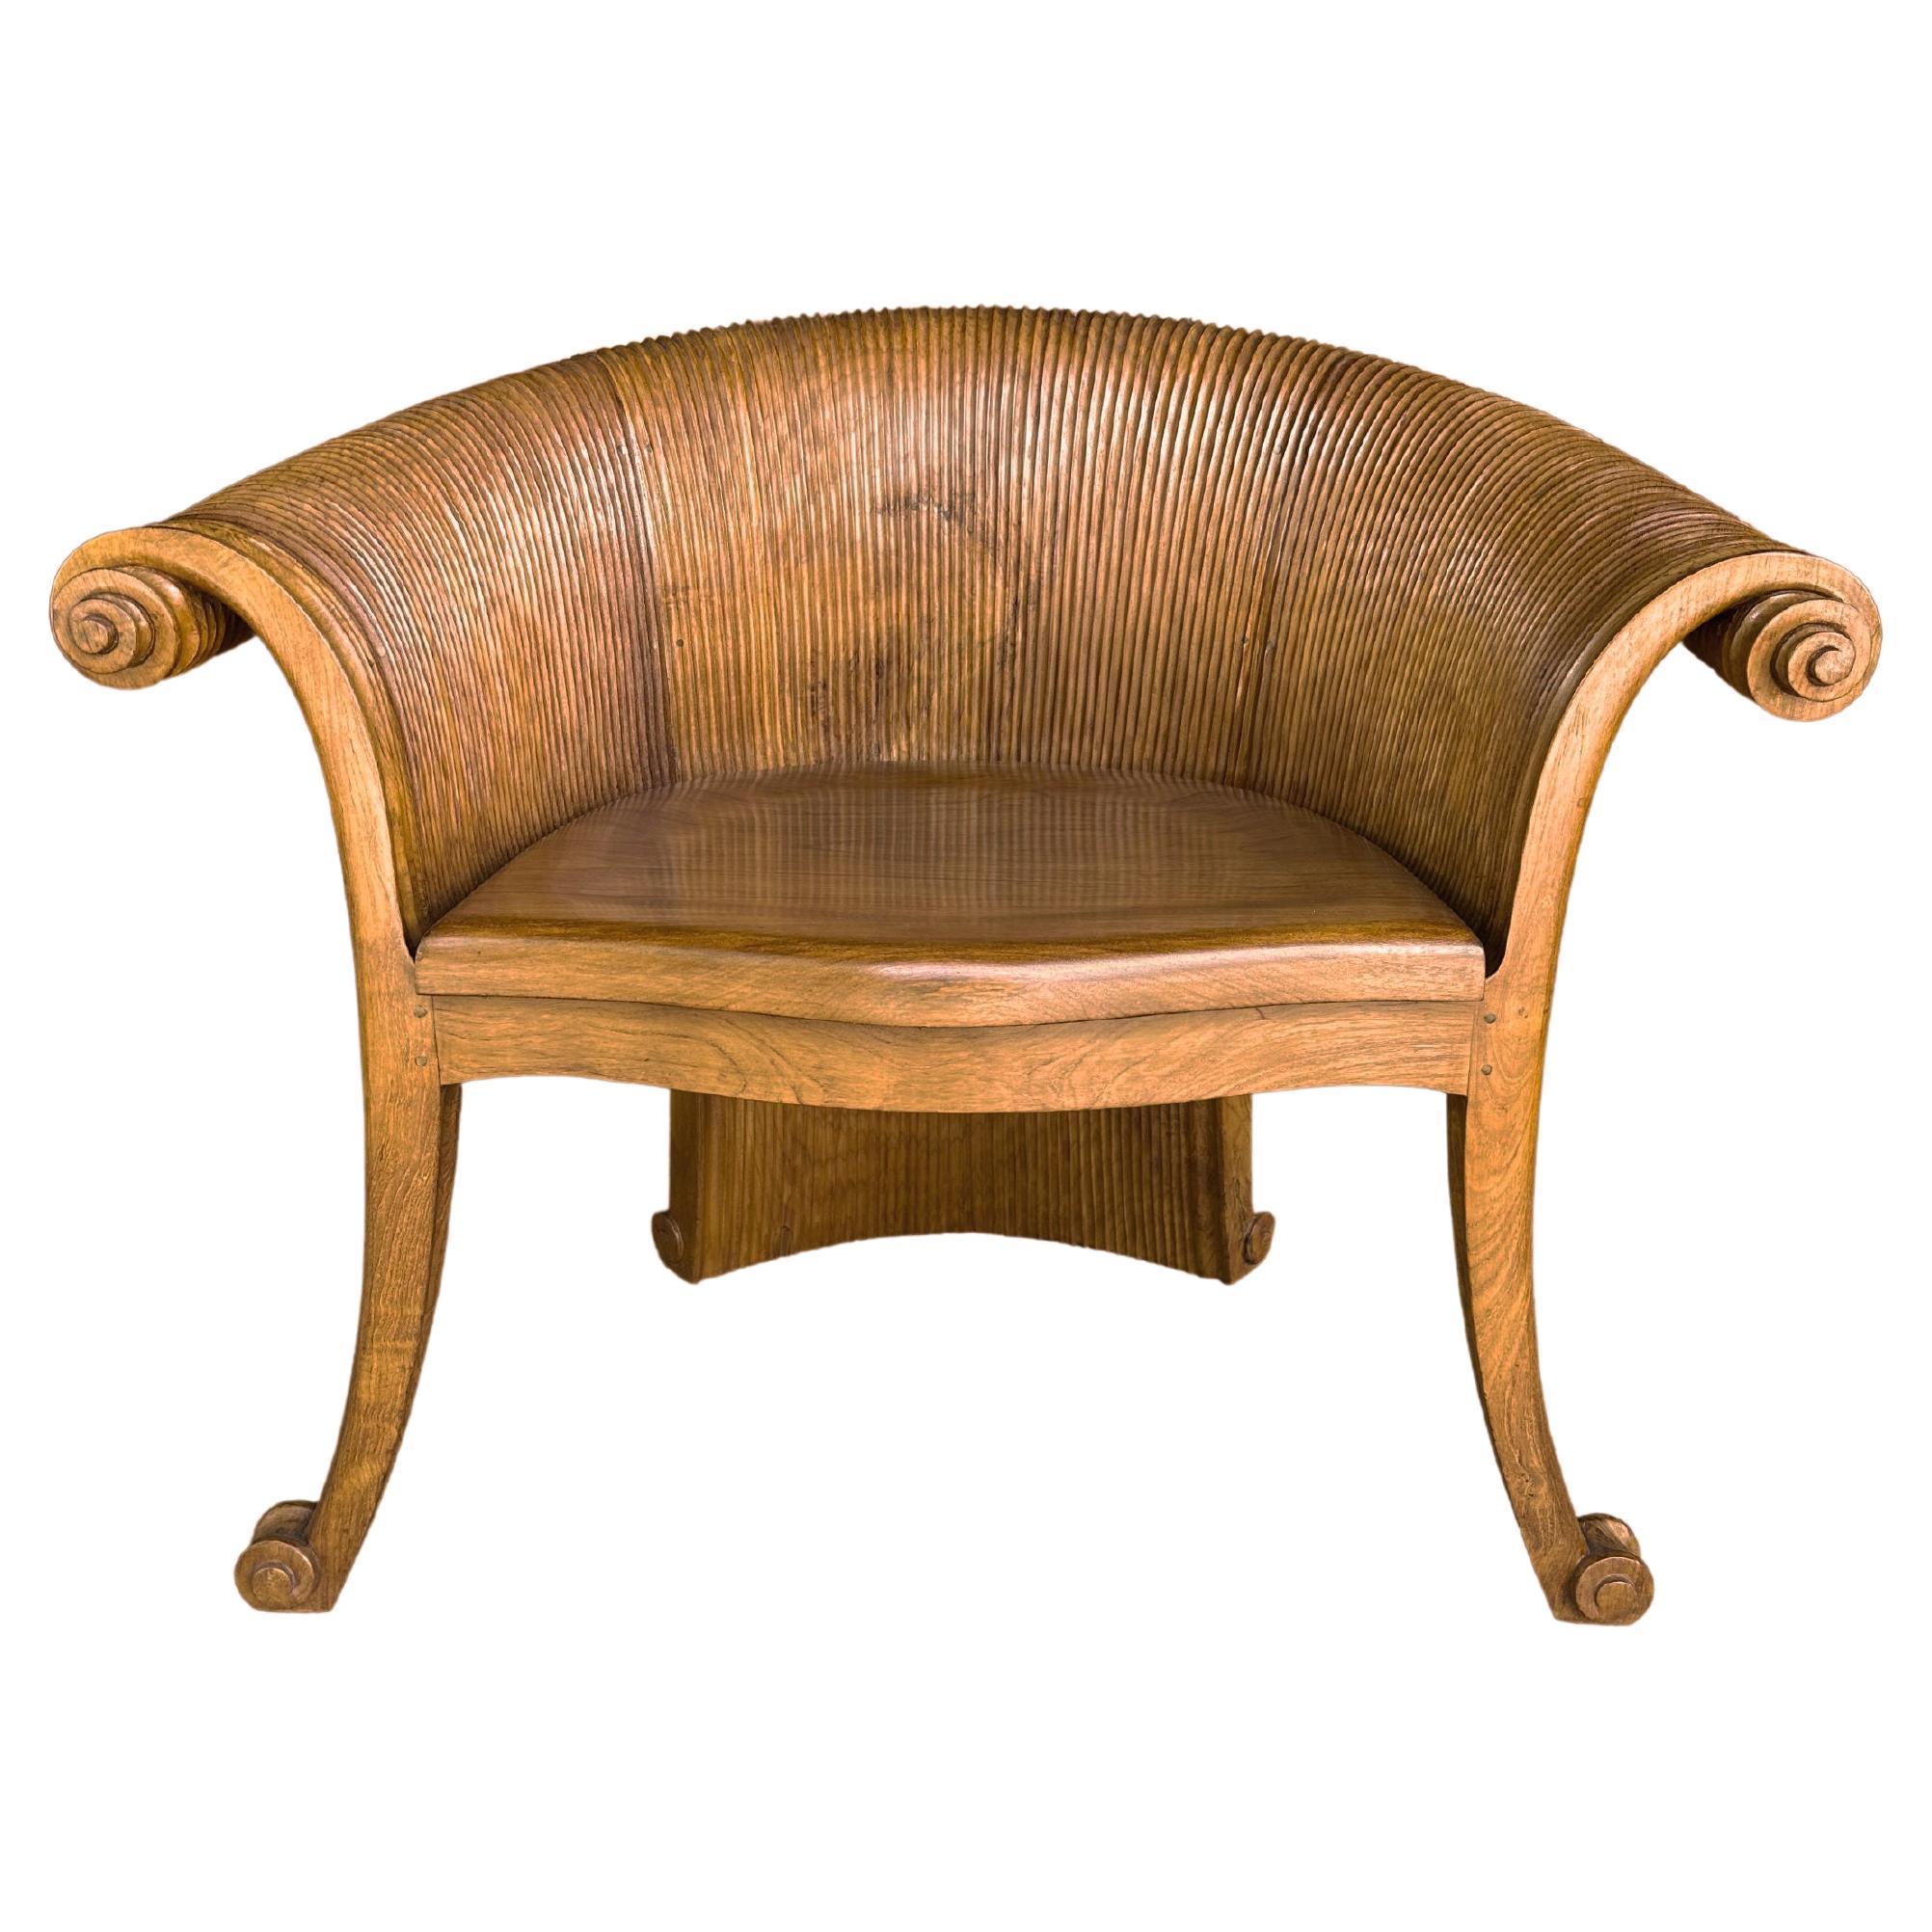 Chaise sculpturale en bois de teck avec détails sculptés